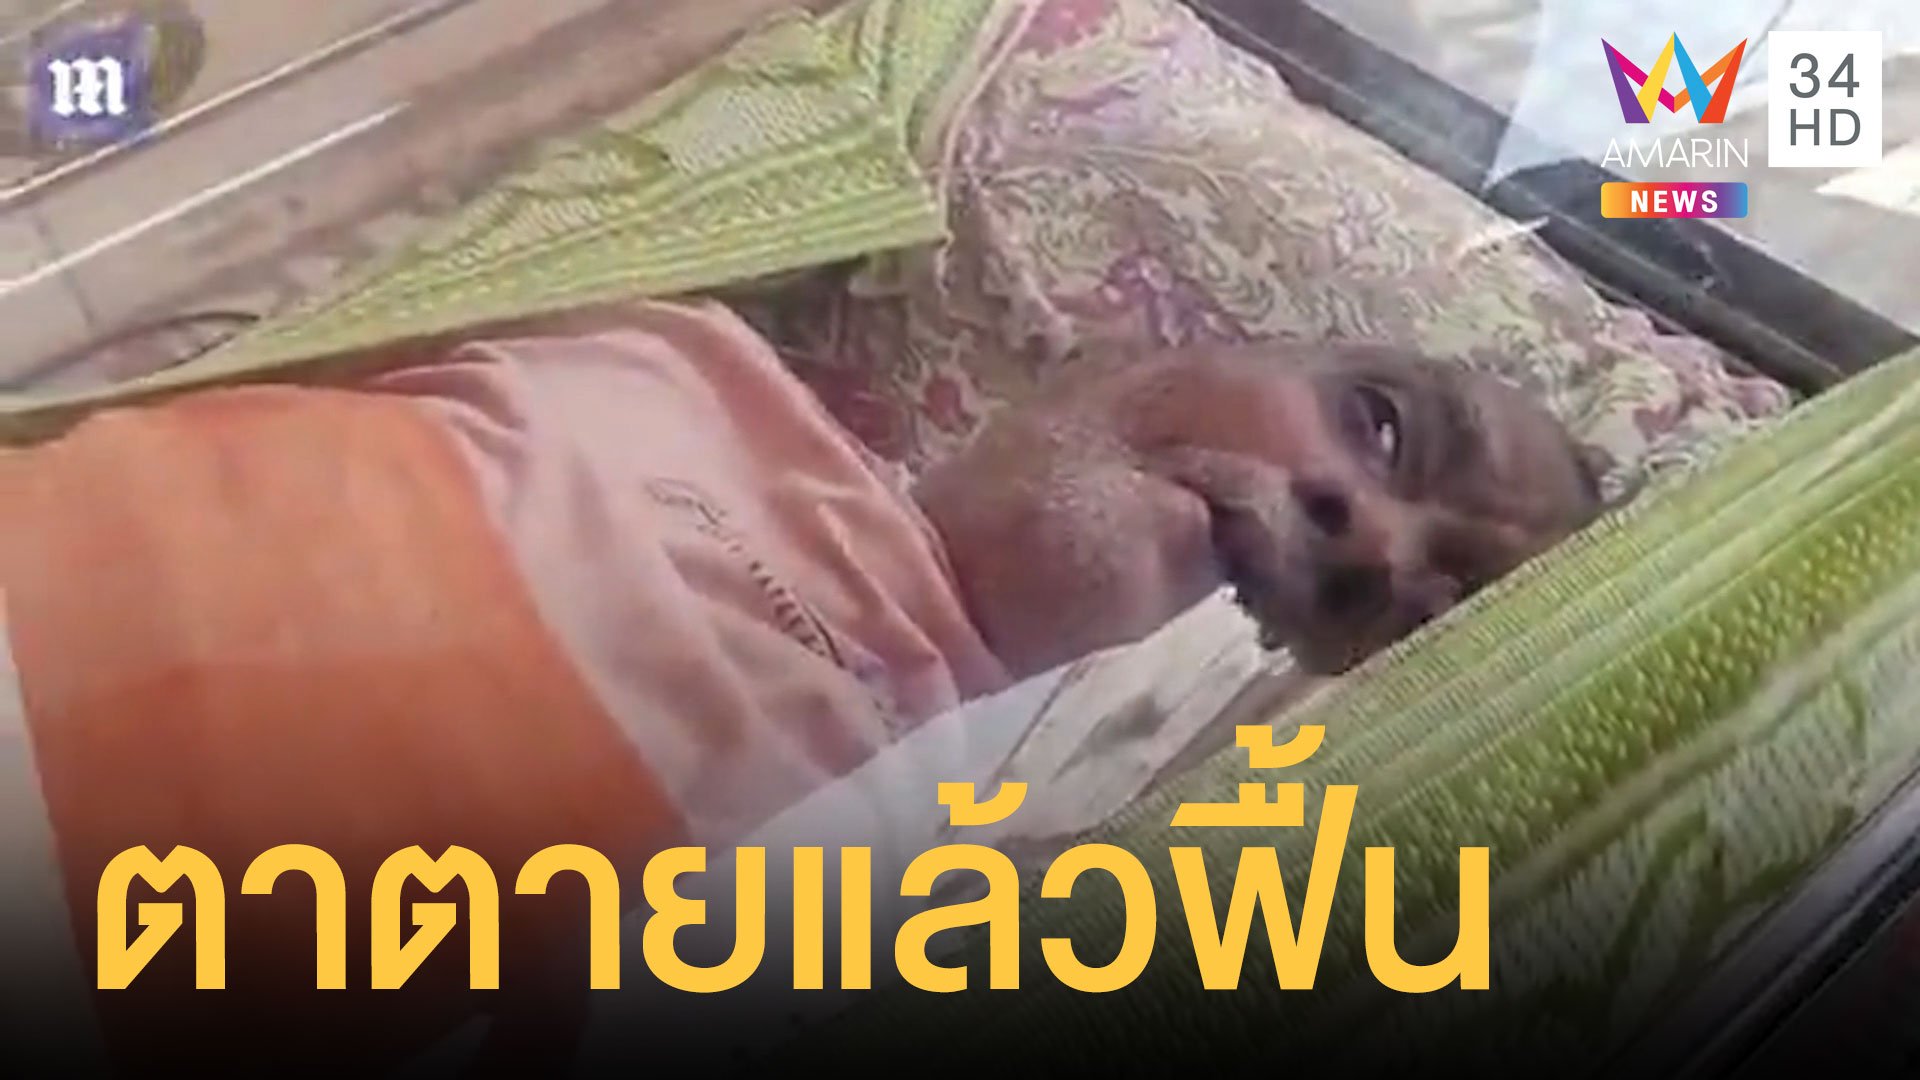 ตาวัย 74 ตายแล้วฟื้น ลืมตาขณะอยู่ในโลงเย็น | ข่าวอรุณอมรินทร์ | 16 ต.ค. 63 | AMARIN TVHD34